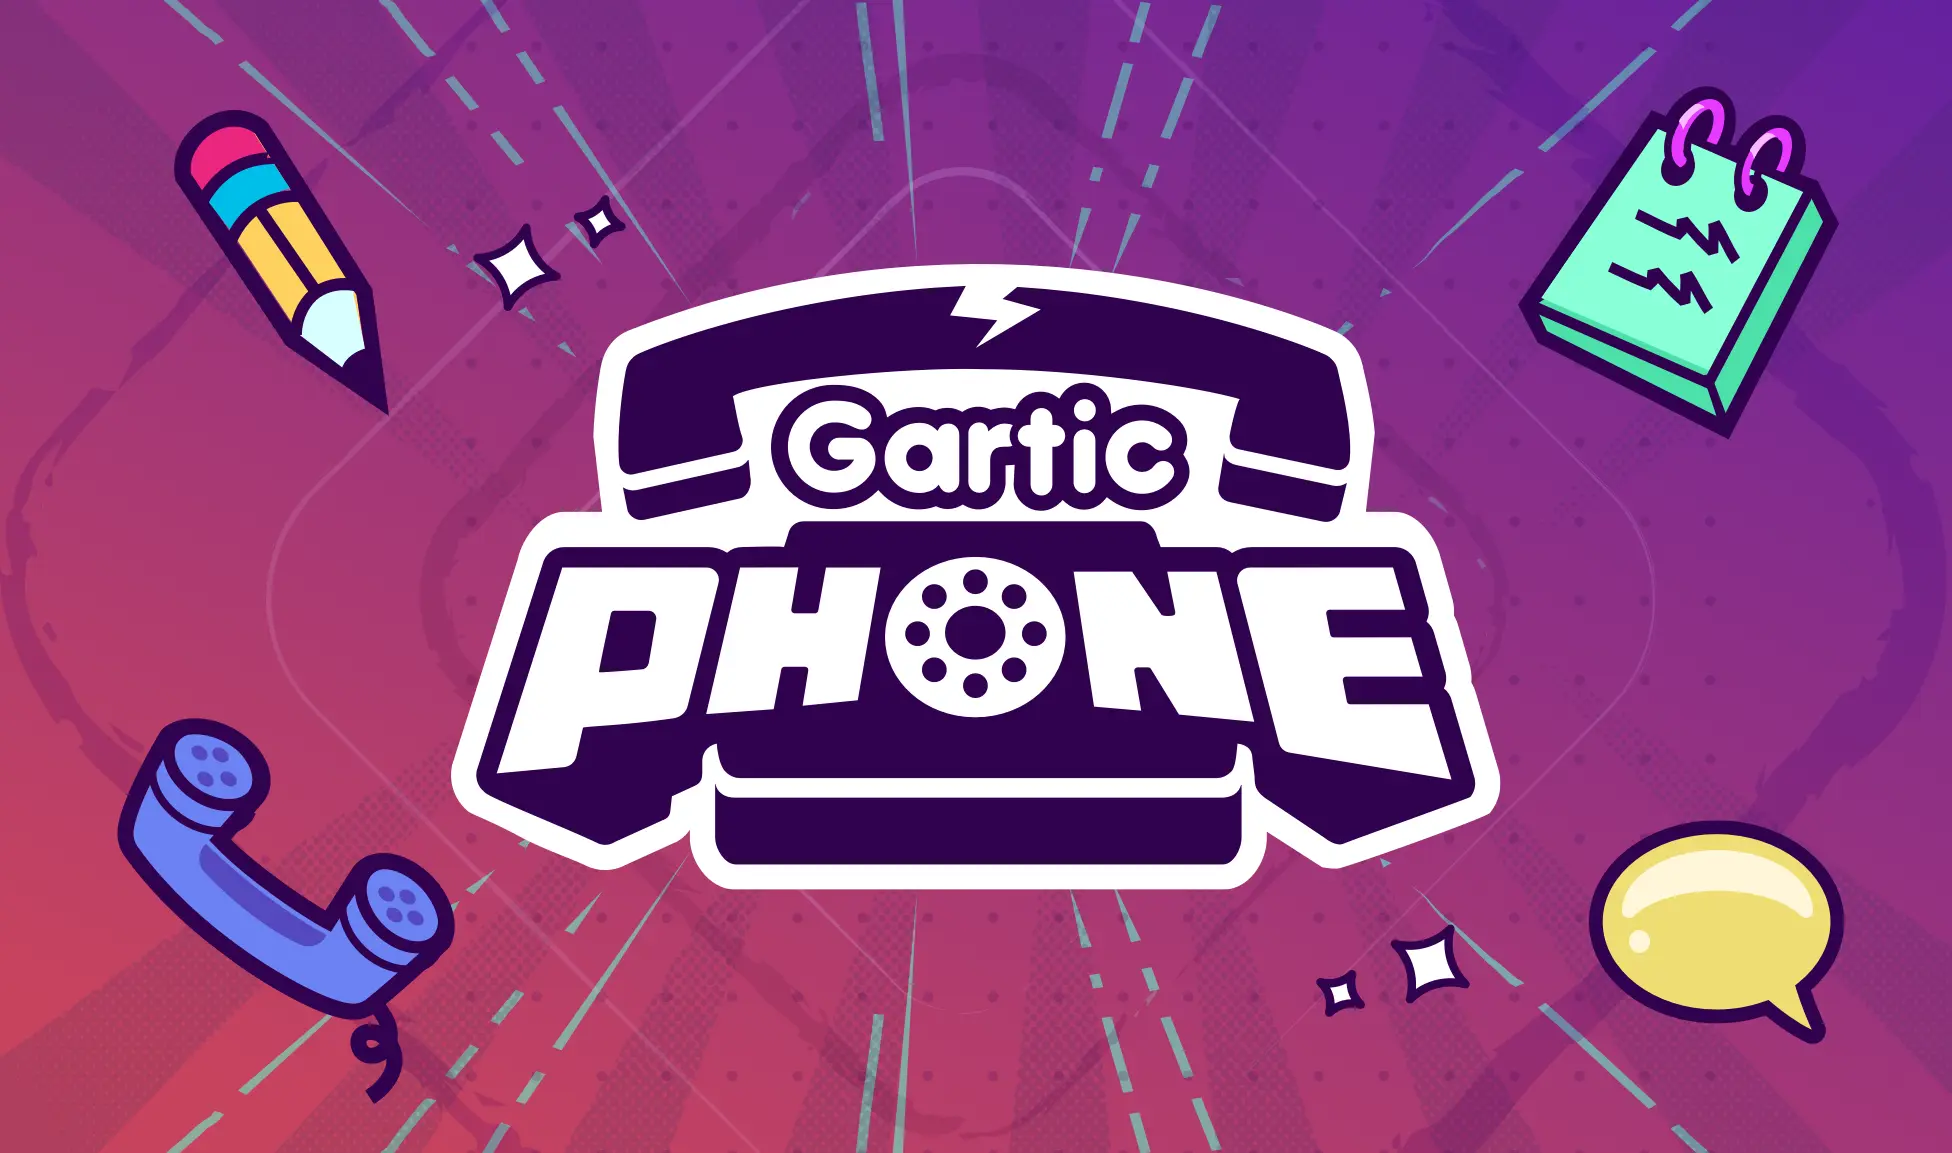 gartic phone juego - Cómo se juega teléfono descompuesto online